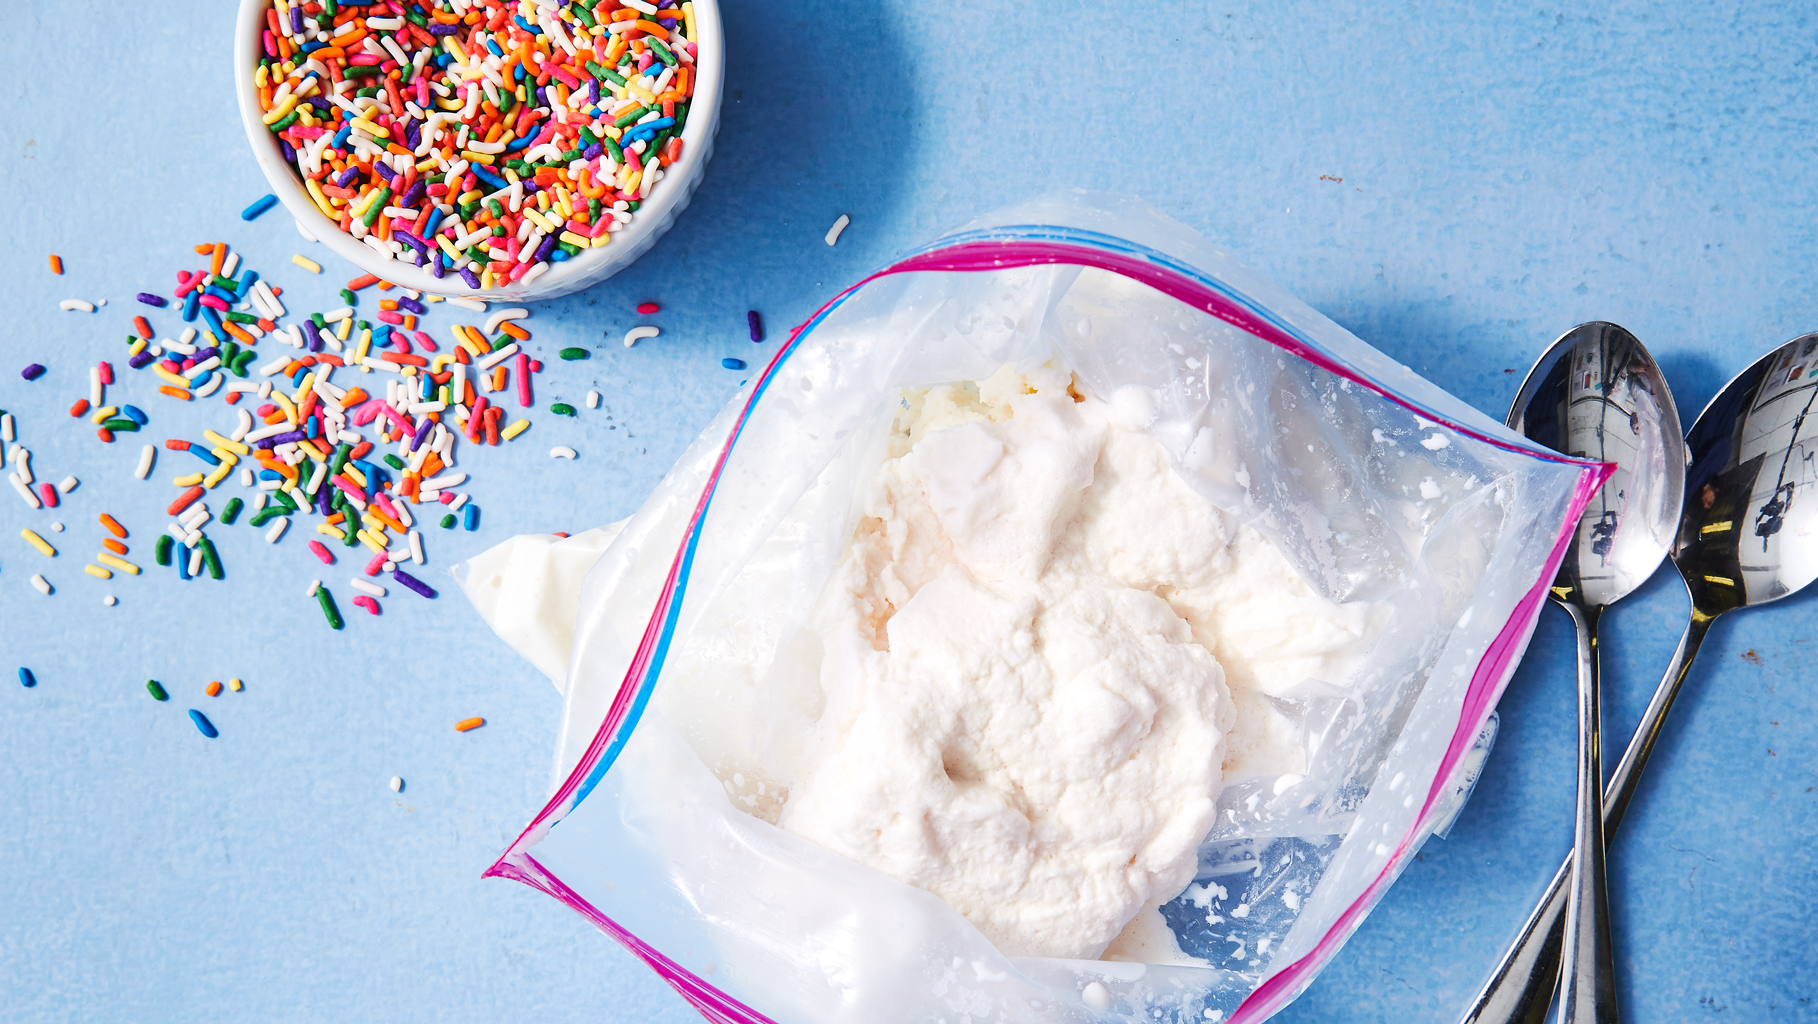 Best Homemade Ice Cream Recipe - How To Make Homemade Ice Cream